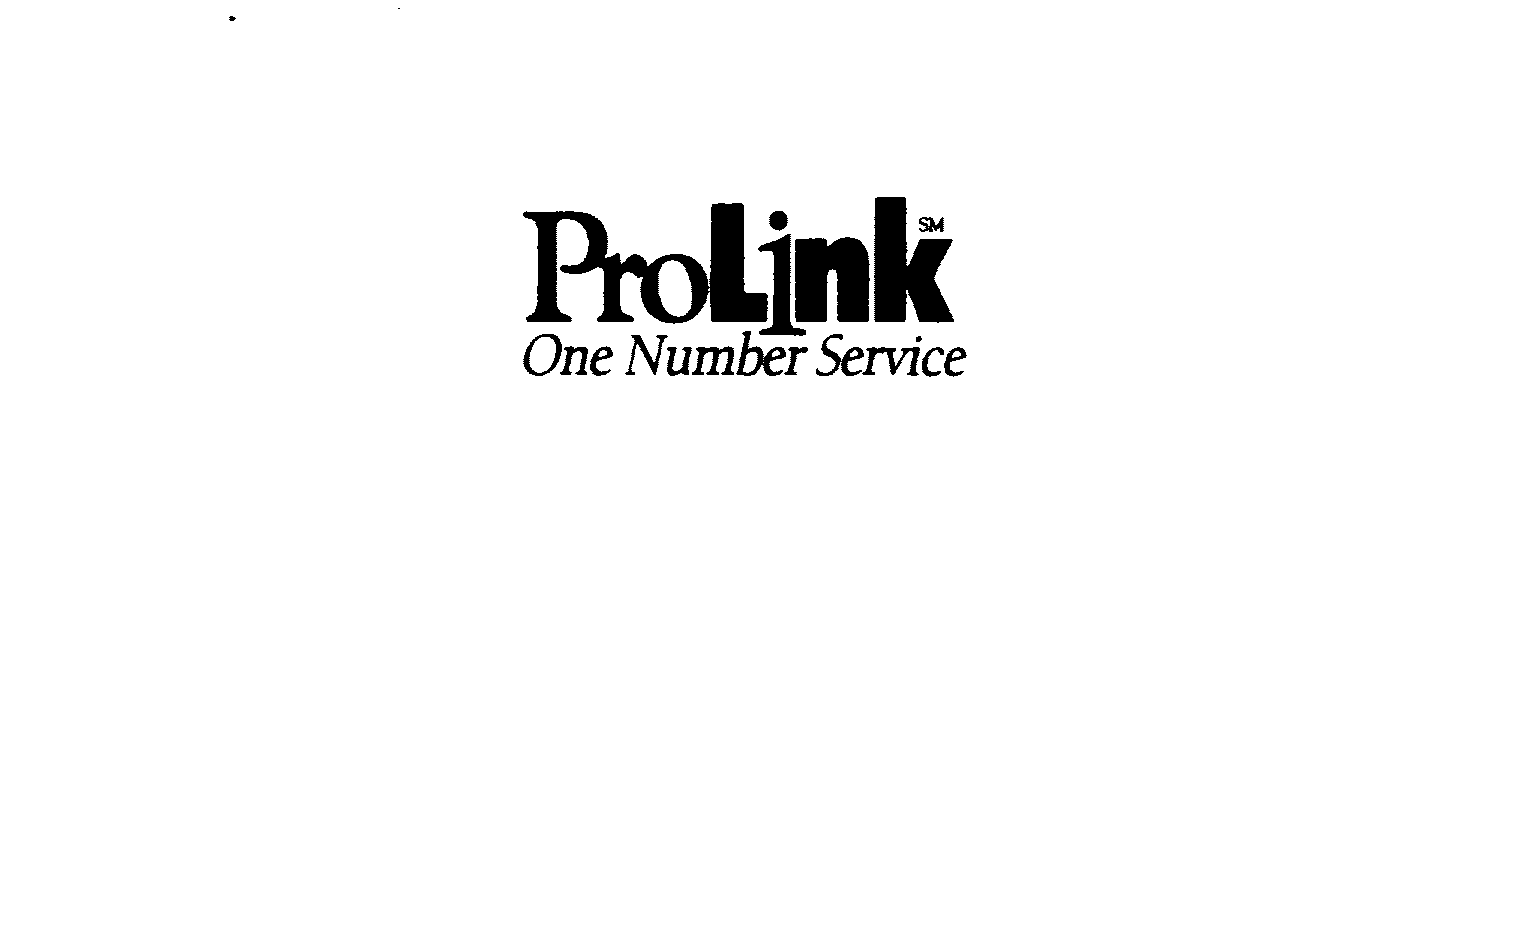  PROLINK ONE NUMBER SERVICE